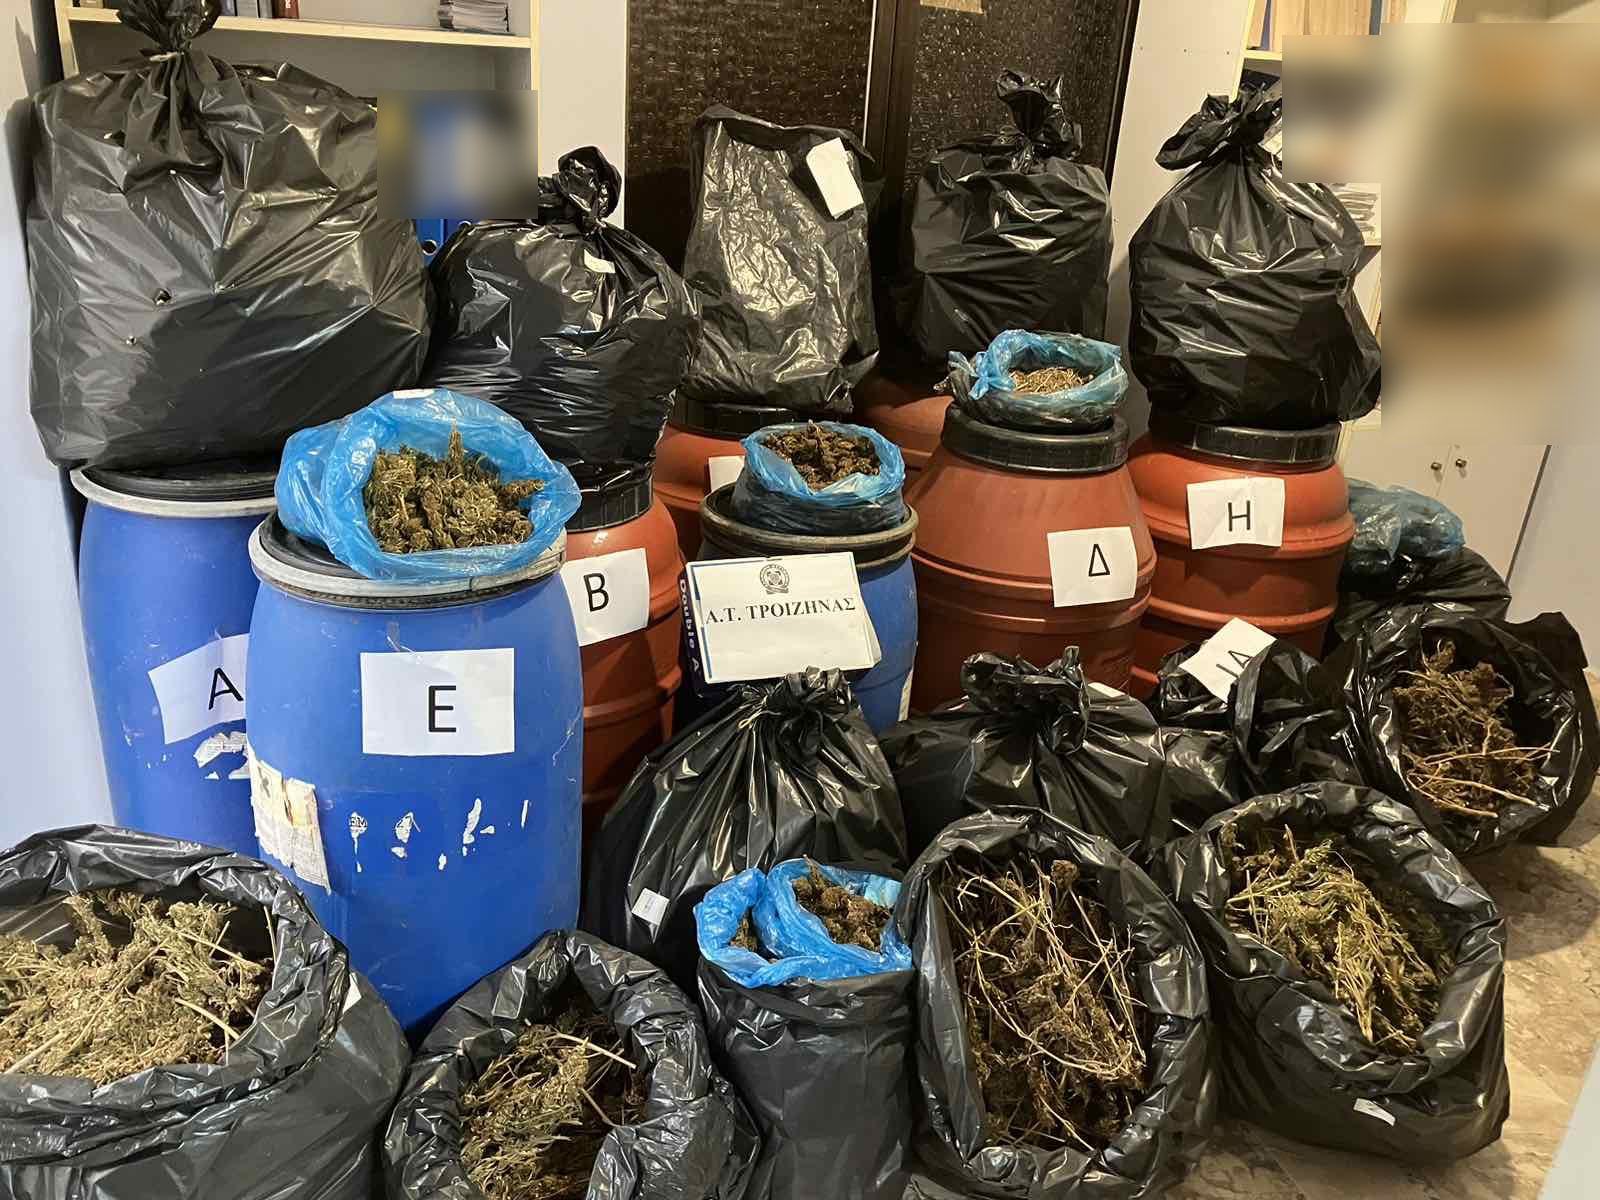 Τροιζίνα: Σακούλες και βαρέλια που βρέθηκαν σε οικόπεδο είχαν μέσα 49 κιλά κάνναβη